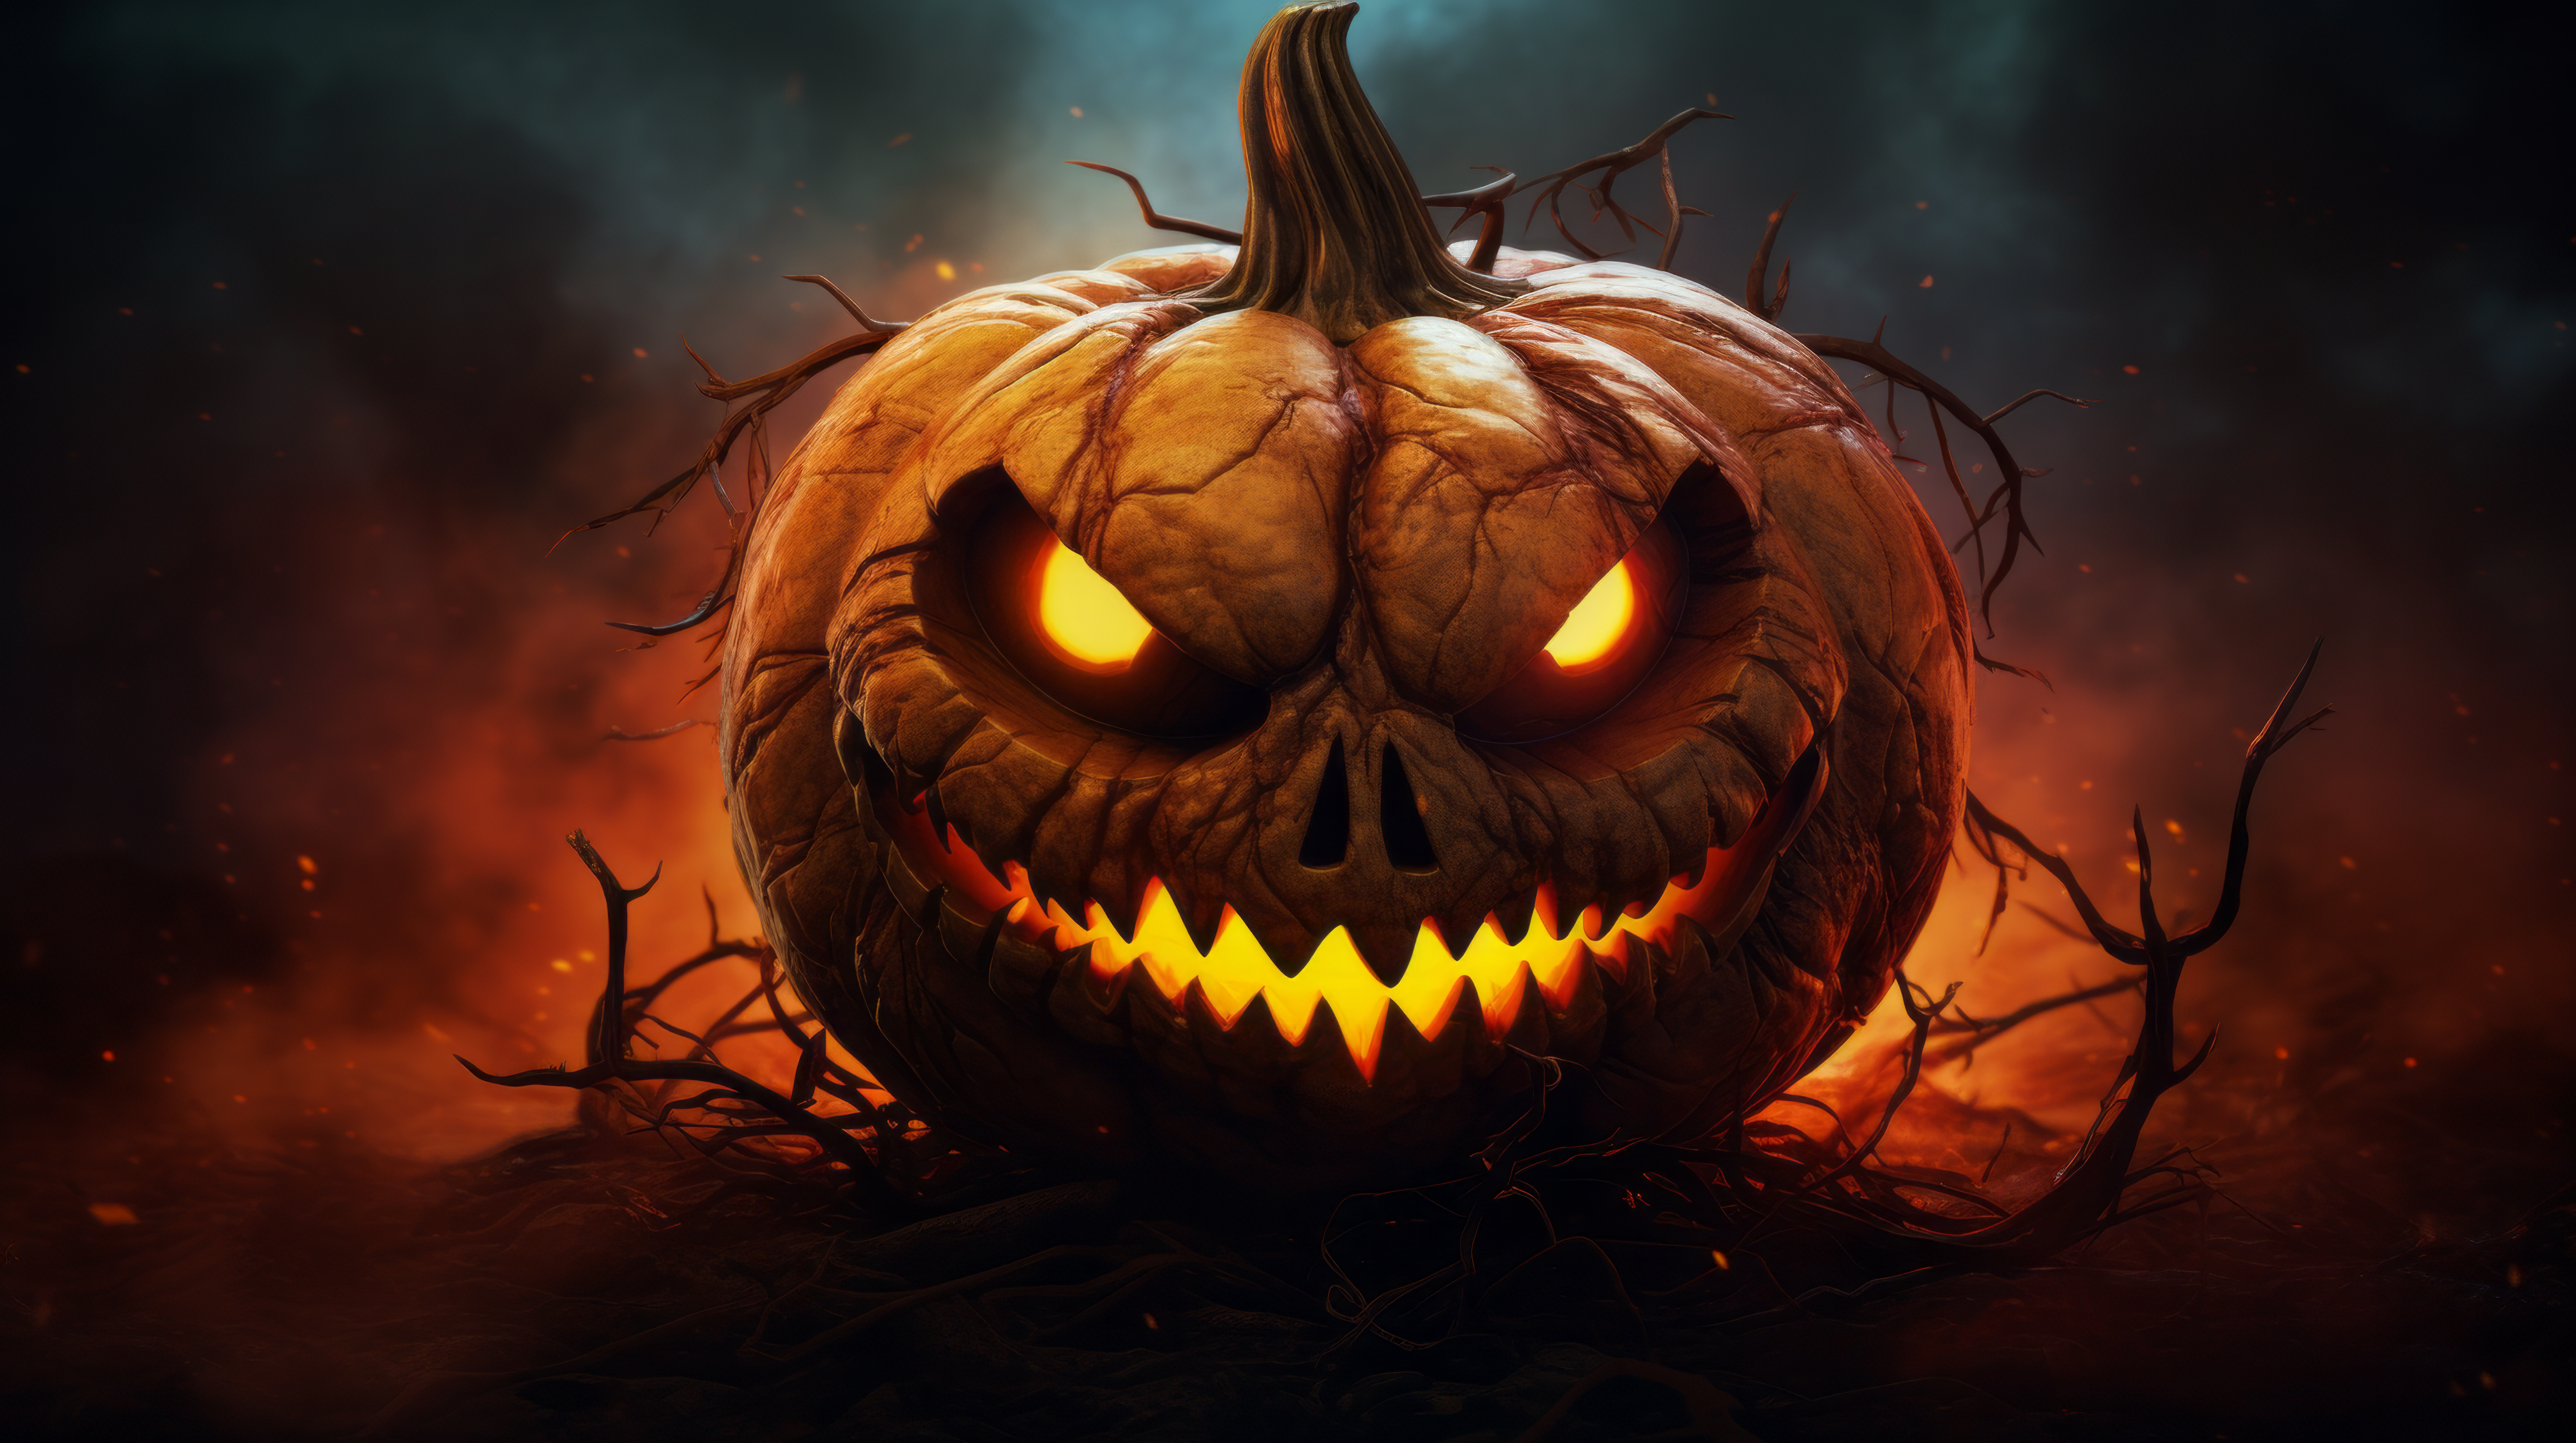 Halloween Pumpkinhead HD Wallpaper Spooky Glow And Fiery